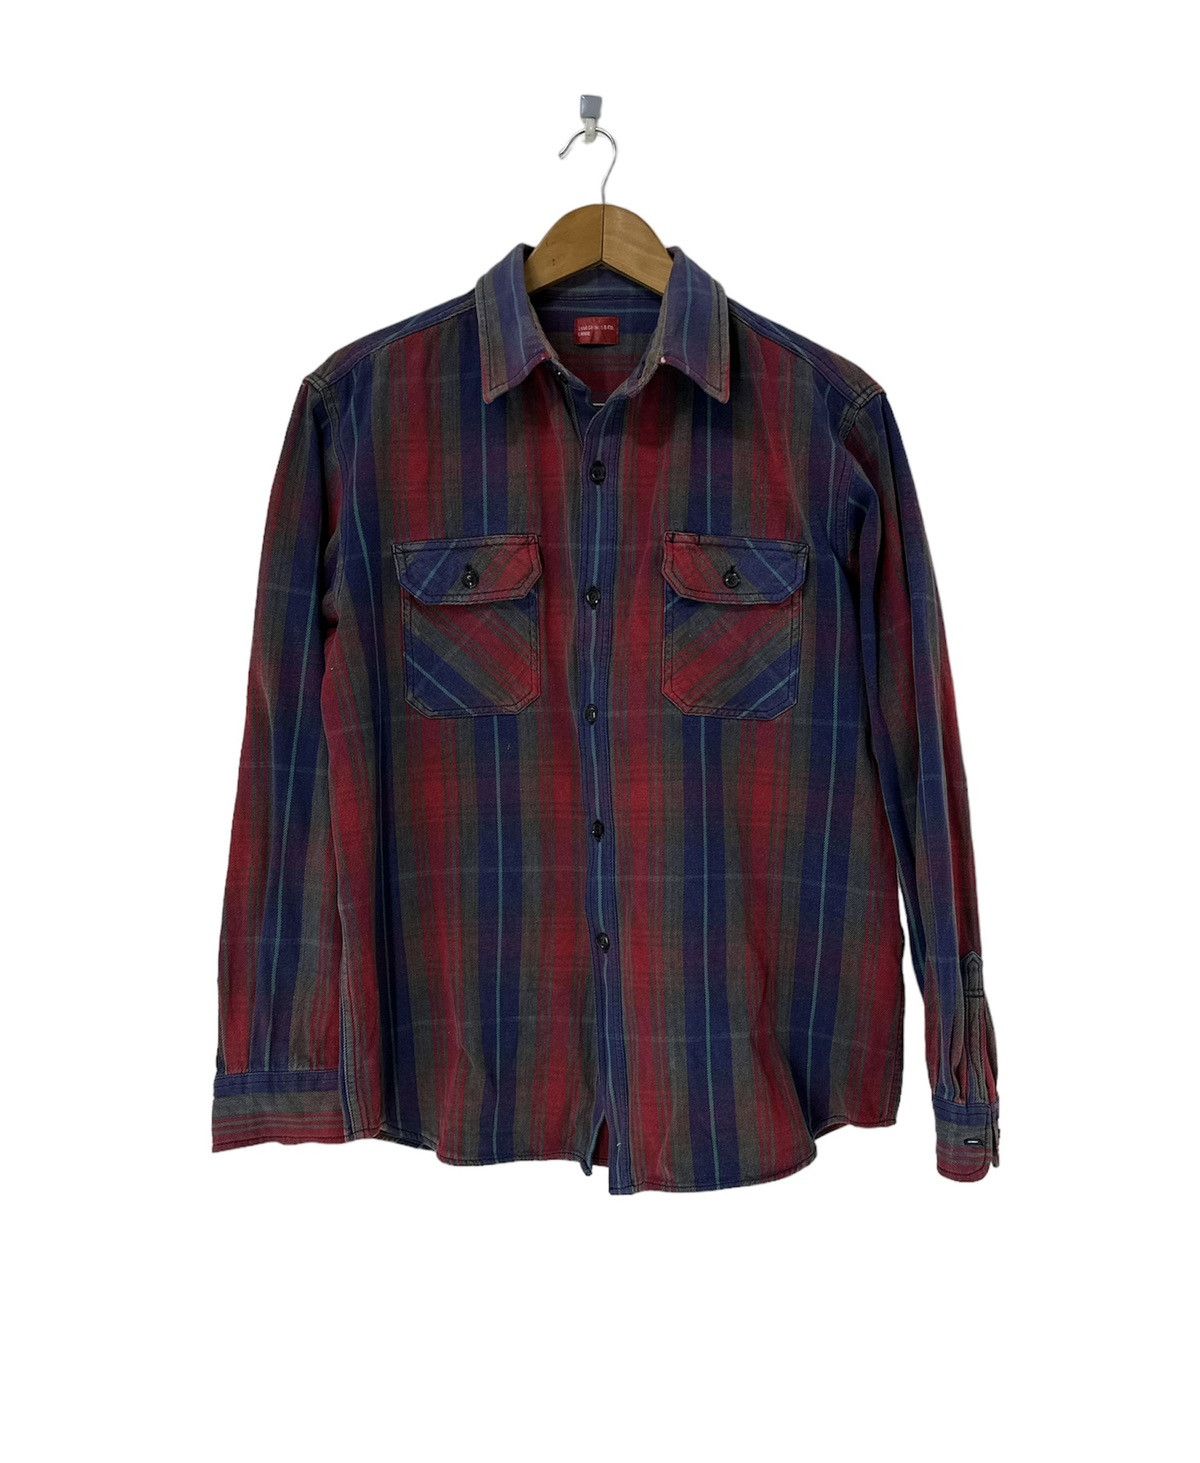 Vintage Levis Button Up Shirt Design - 1